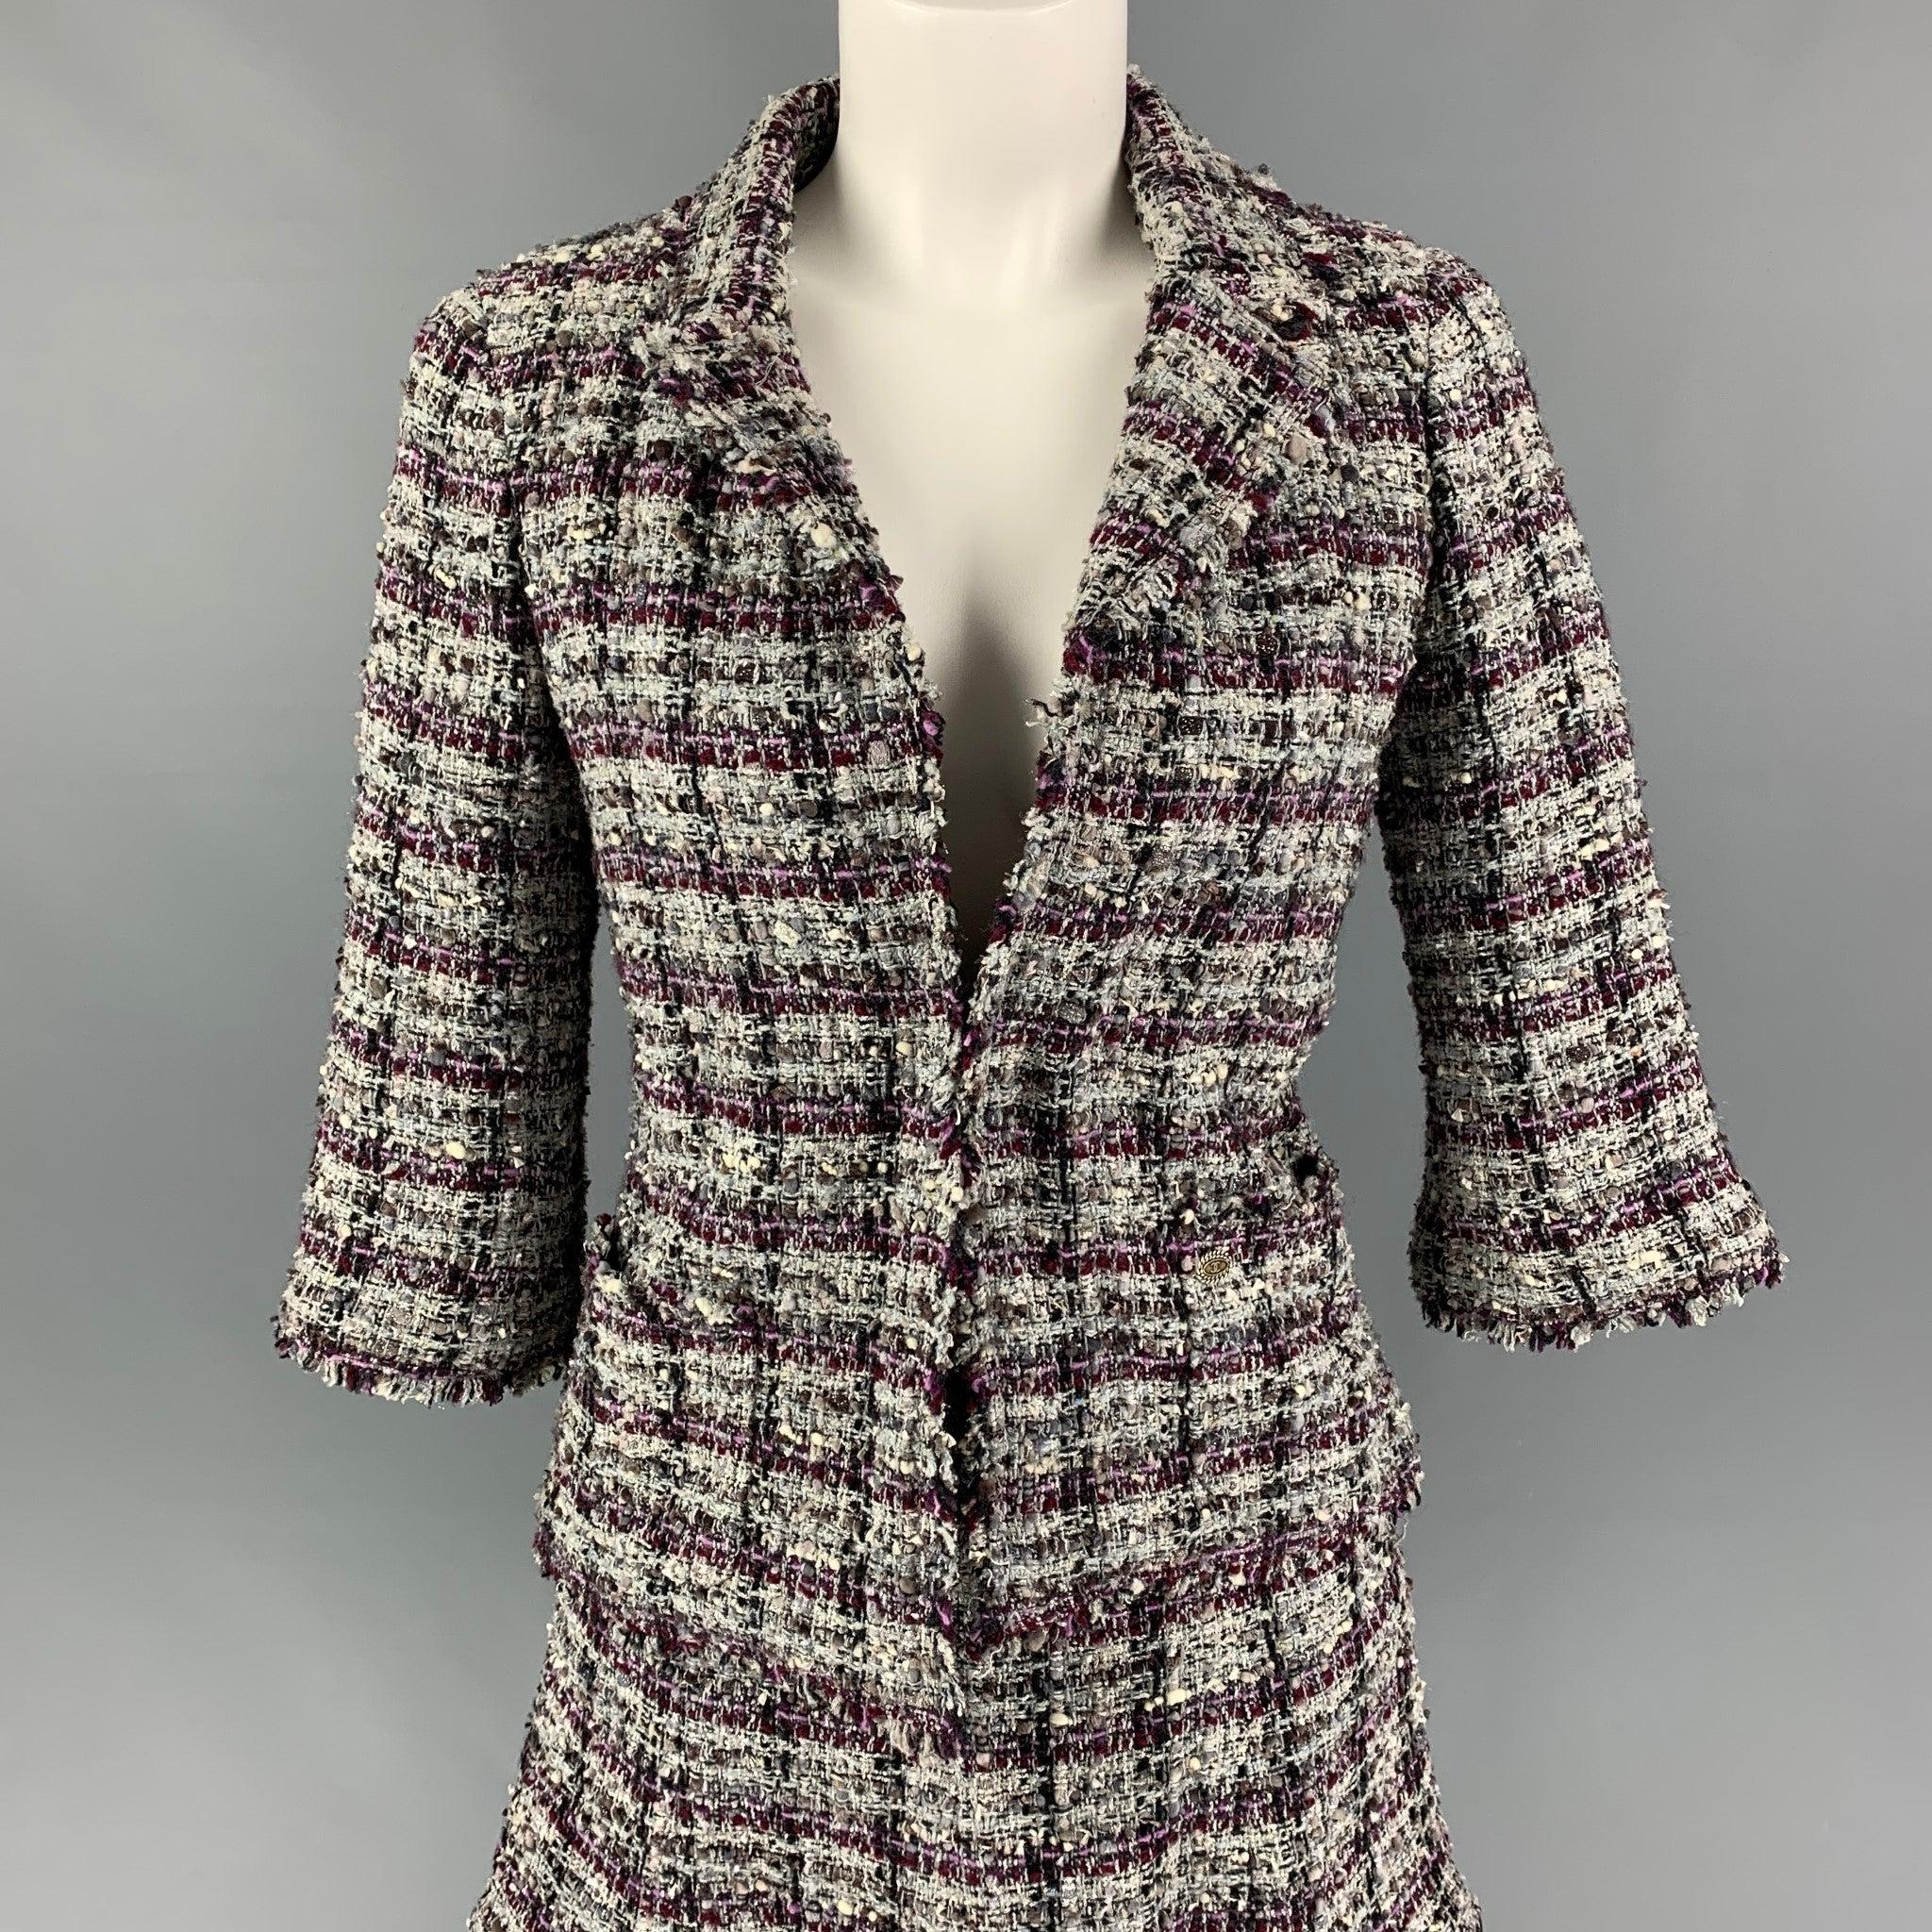 L'ensemble de jupes CHANEL se compose d'un mélange de polyester bouclé violet et gris, d'un revers à cran, de boutons argentés, d'une ouverture sur le devant et d'une jupe superposée assortie. Comprend du tissu supplémentaire. Fabriqué en